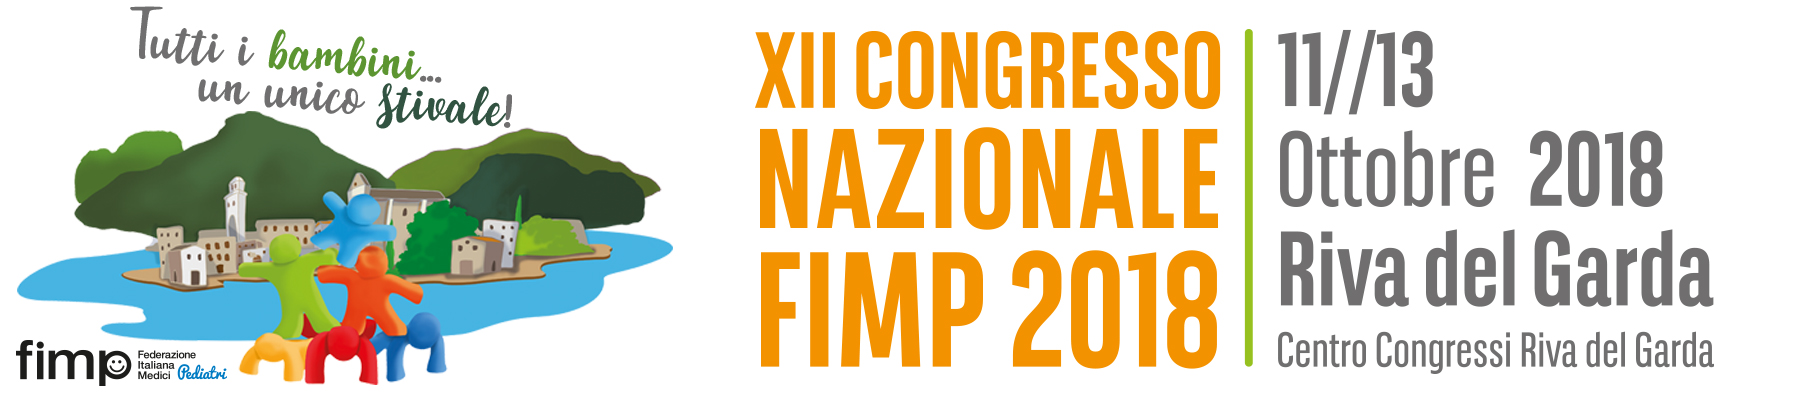 XII Congresso Nazionale Fimp 2018